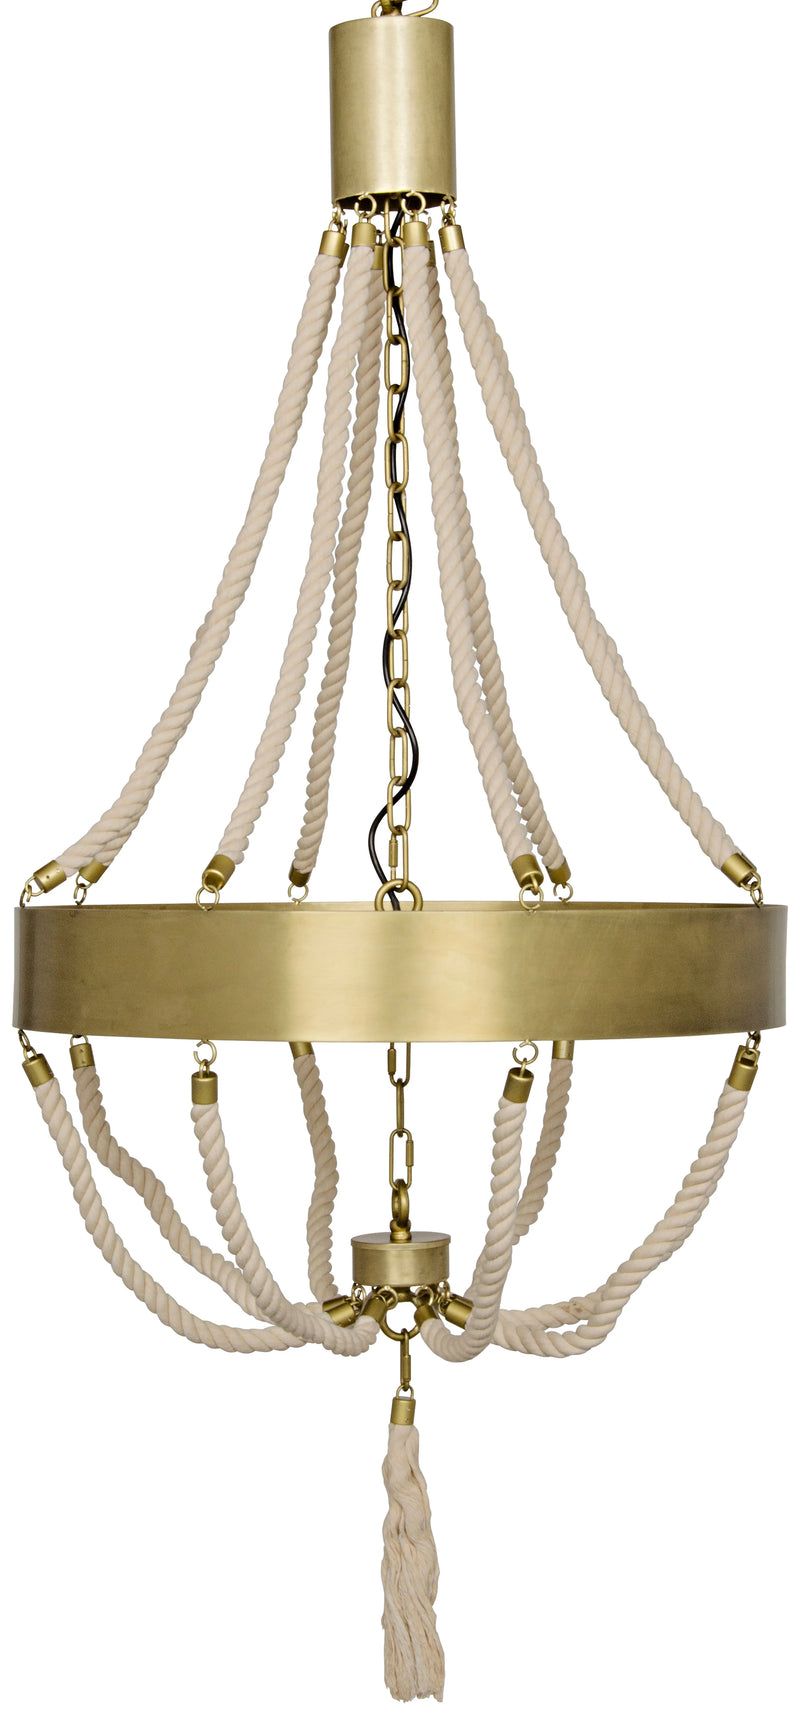 media image for alec chandelier design by noir 1 267